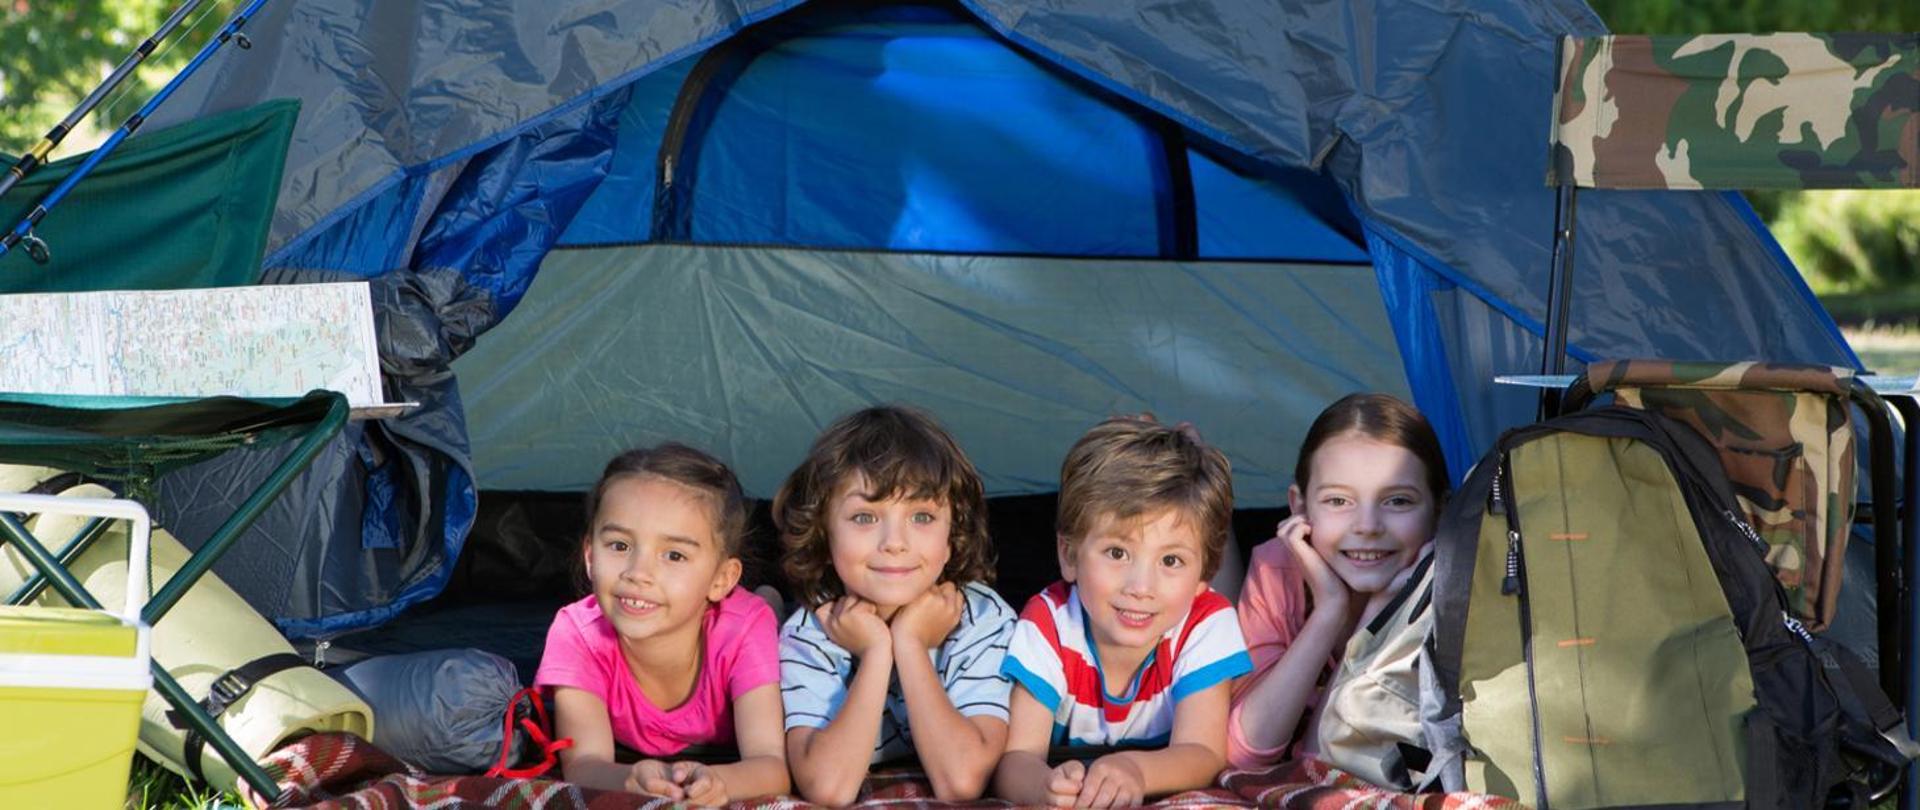 grafika przedstawia czwórkę dzieci leżących w namiocie. Obok nich leży sprzęt do biwakowania